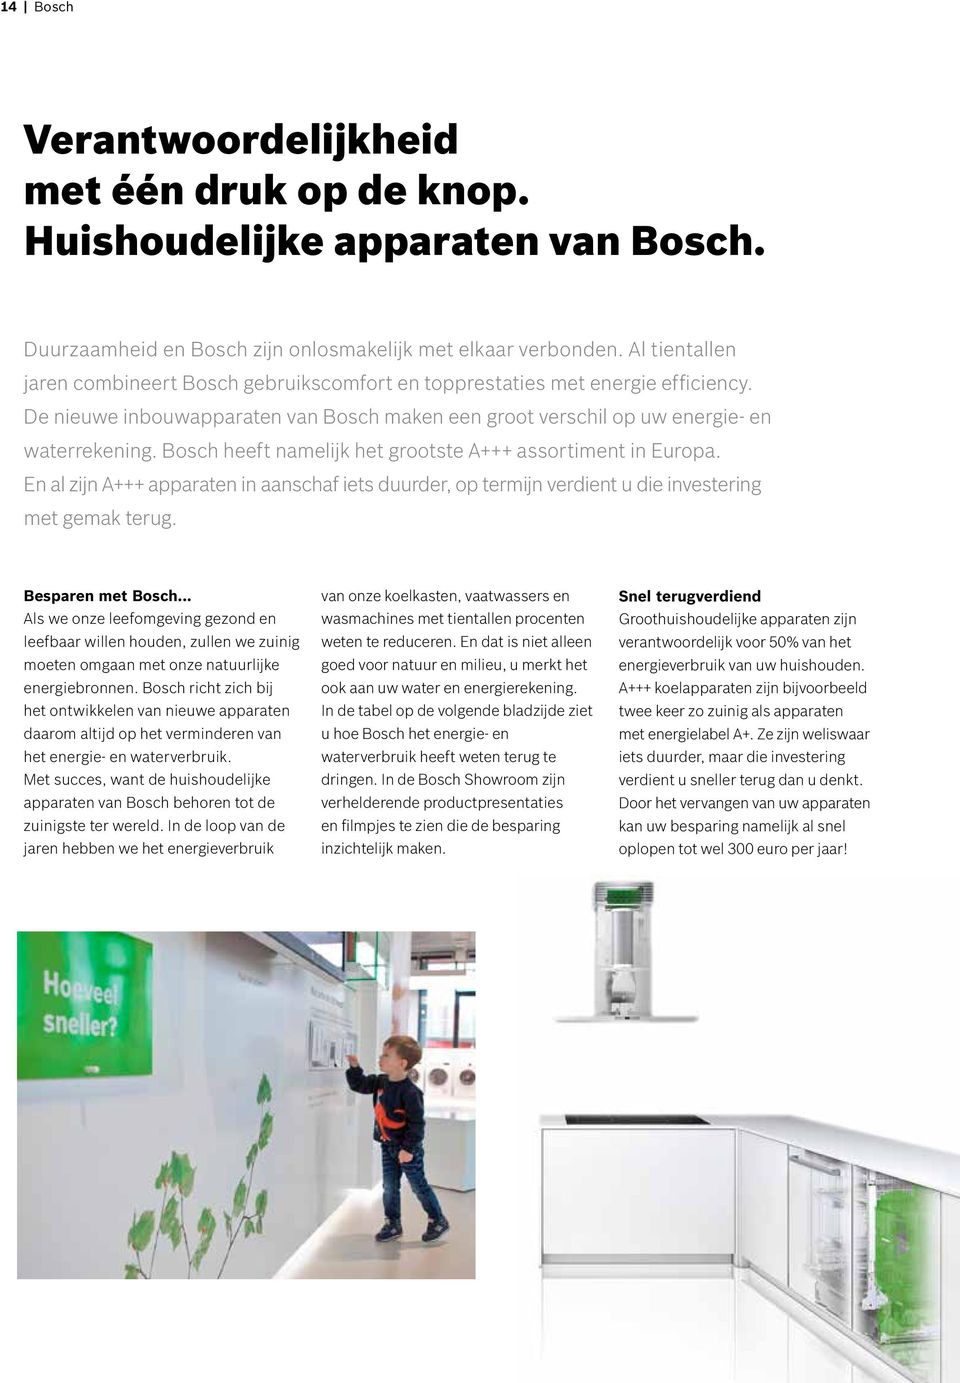 Bosch heeft namelijk het grootste A+++ assortiment in Europa. En al zijn A+++ apparaten in aanschaf iets duurder, op termijn verdient u die investering met gemak terug. Besparen met Bosch.